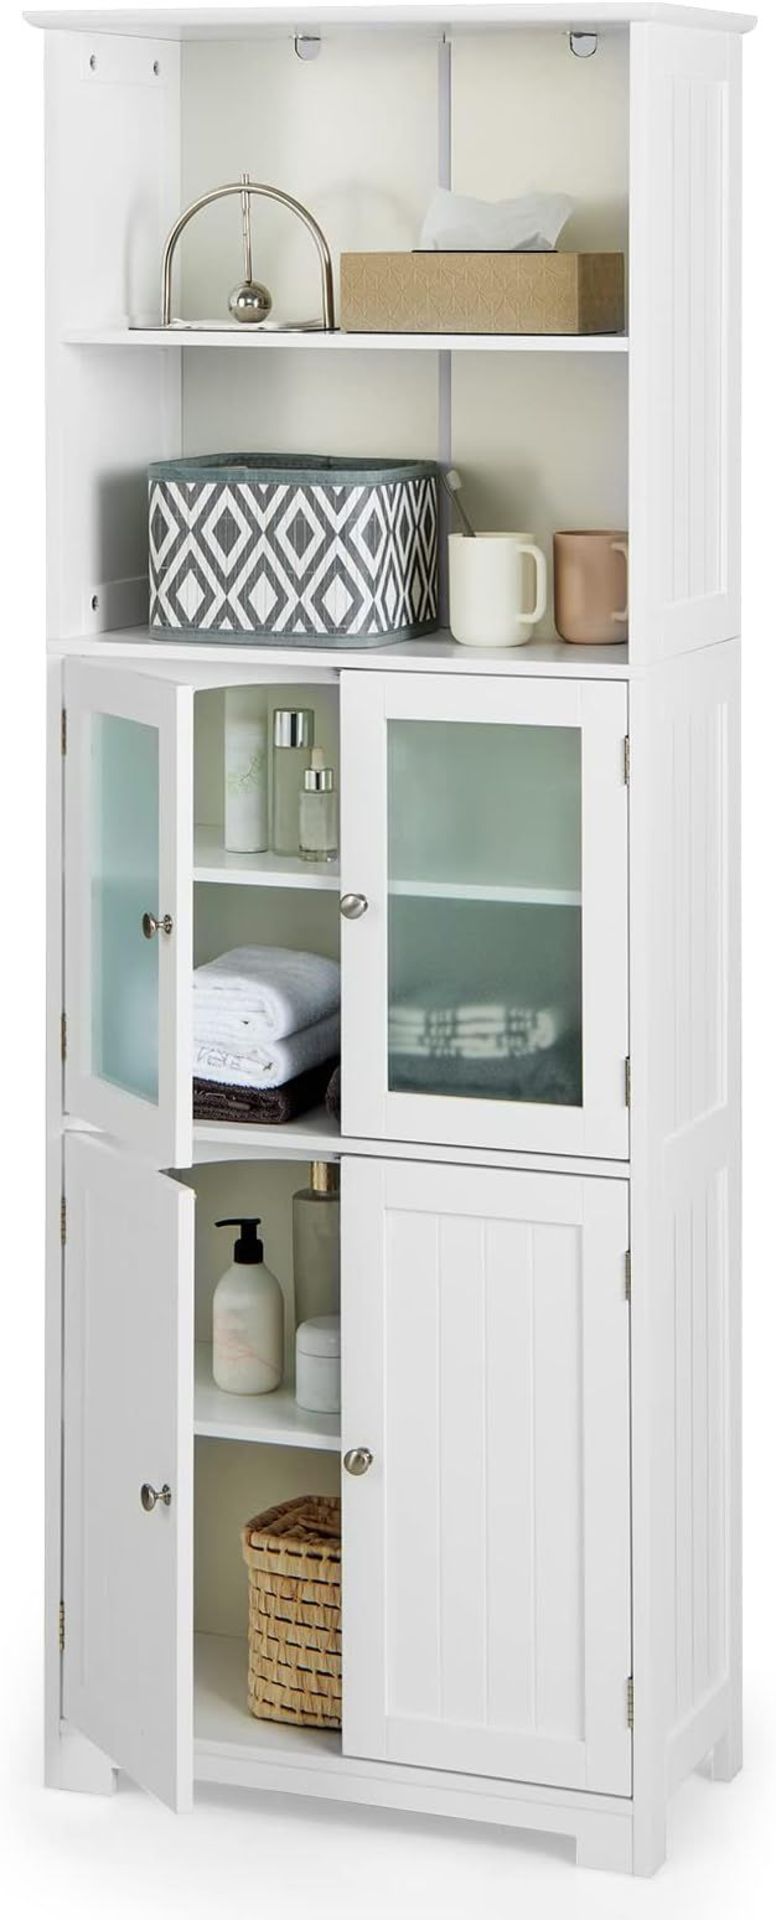 CASART Bathroom Floor Cabinet, Wooden Storage Cupboard with Adjustable Shelf & Doors, Freestanding